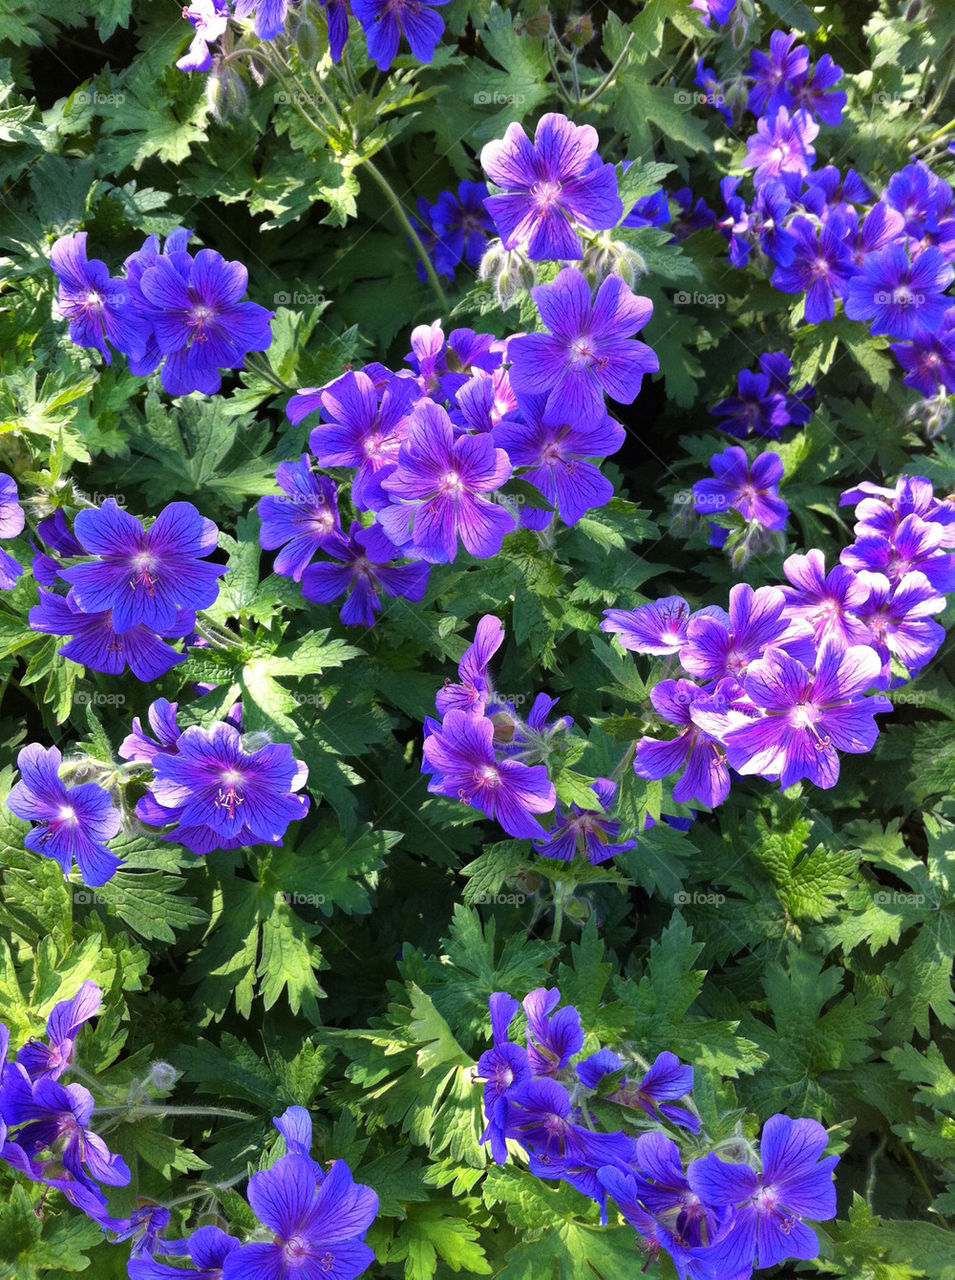 blommor blå by ebbamaria